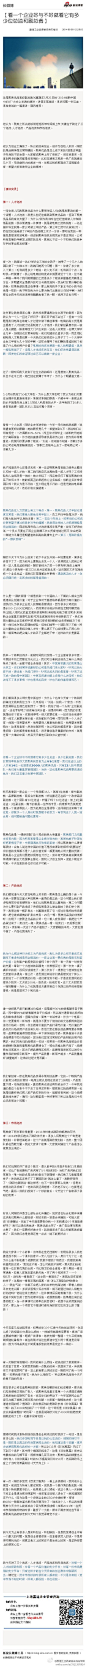 【看一个企业好与不好就看它有多少位总监和副总裁】：这是聚美优品高级副总裁刘惠璞在5月21日的“2014创新中国•NEXT”大会上发表的演讲。讲得非常透彻，很多问题一针见血，很有尝试的一篇演讲...文字版>> http://t.cn/Rv6iOpK （新浪长微博>> http://t.cn/zOXAaic）